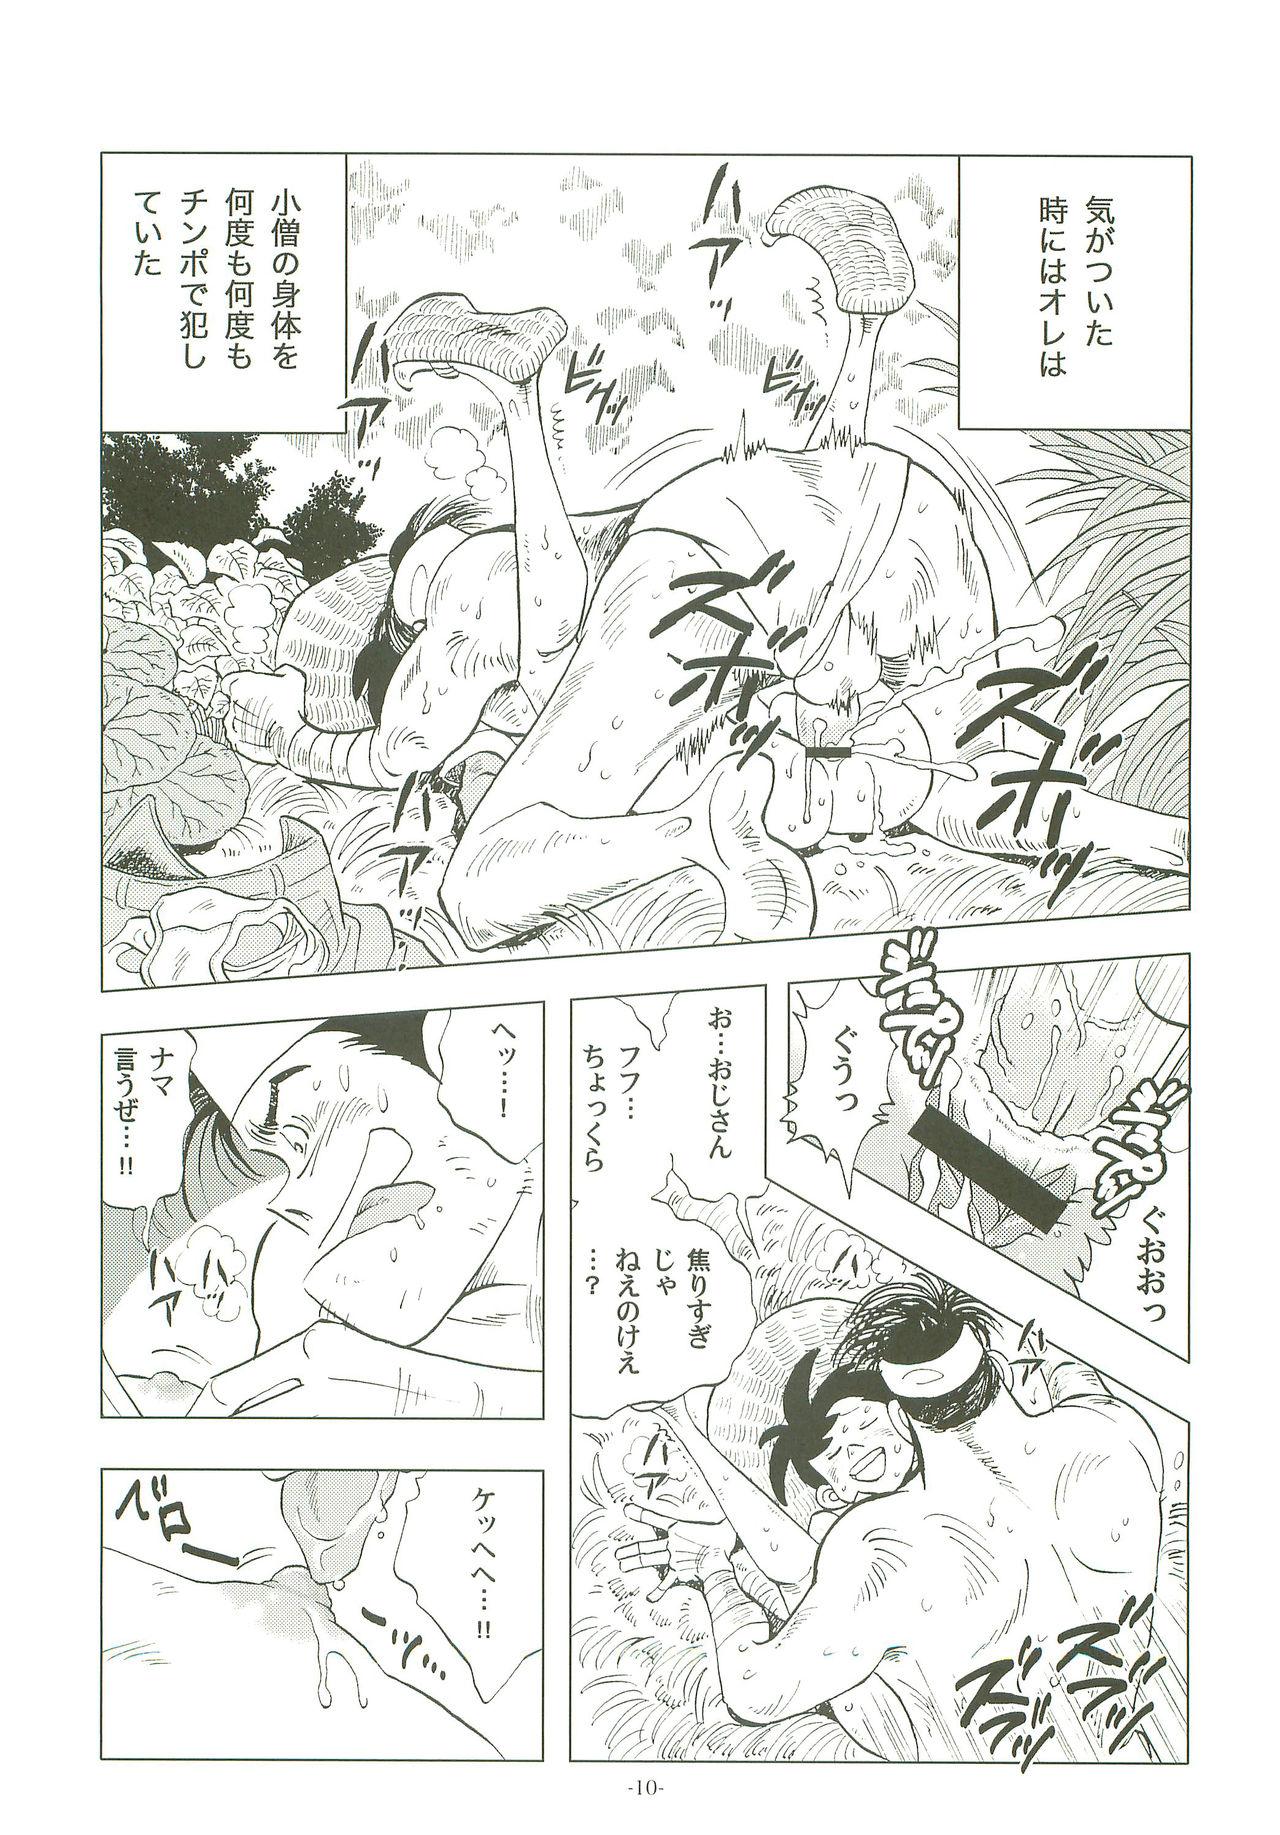 Sucking Sao o Nigirasha Nipponichi!! 2 - Tsurikichi sanpei Dirty - Page 9